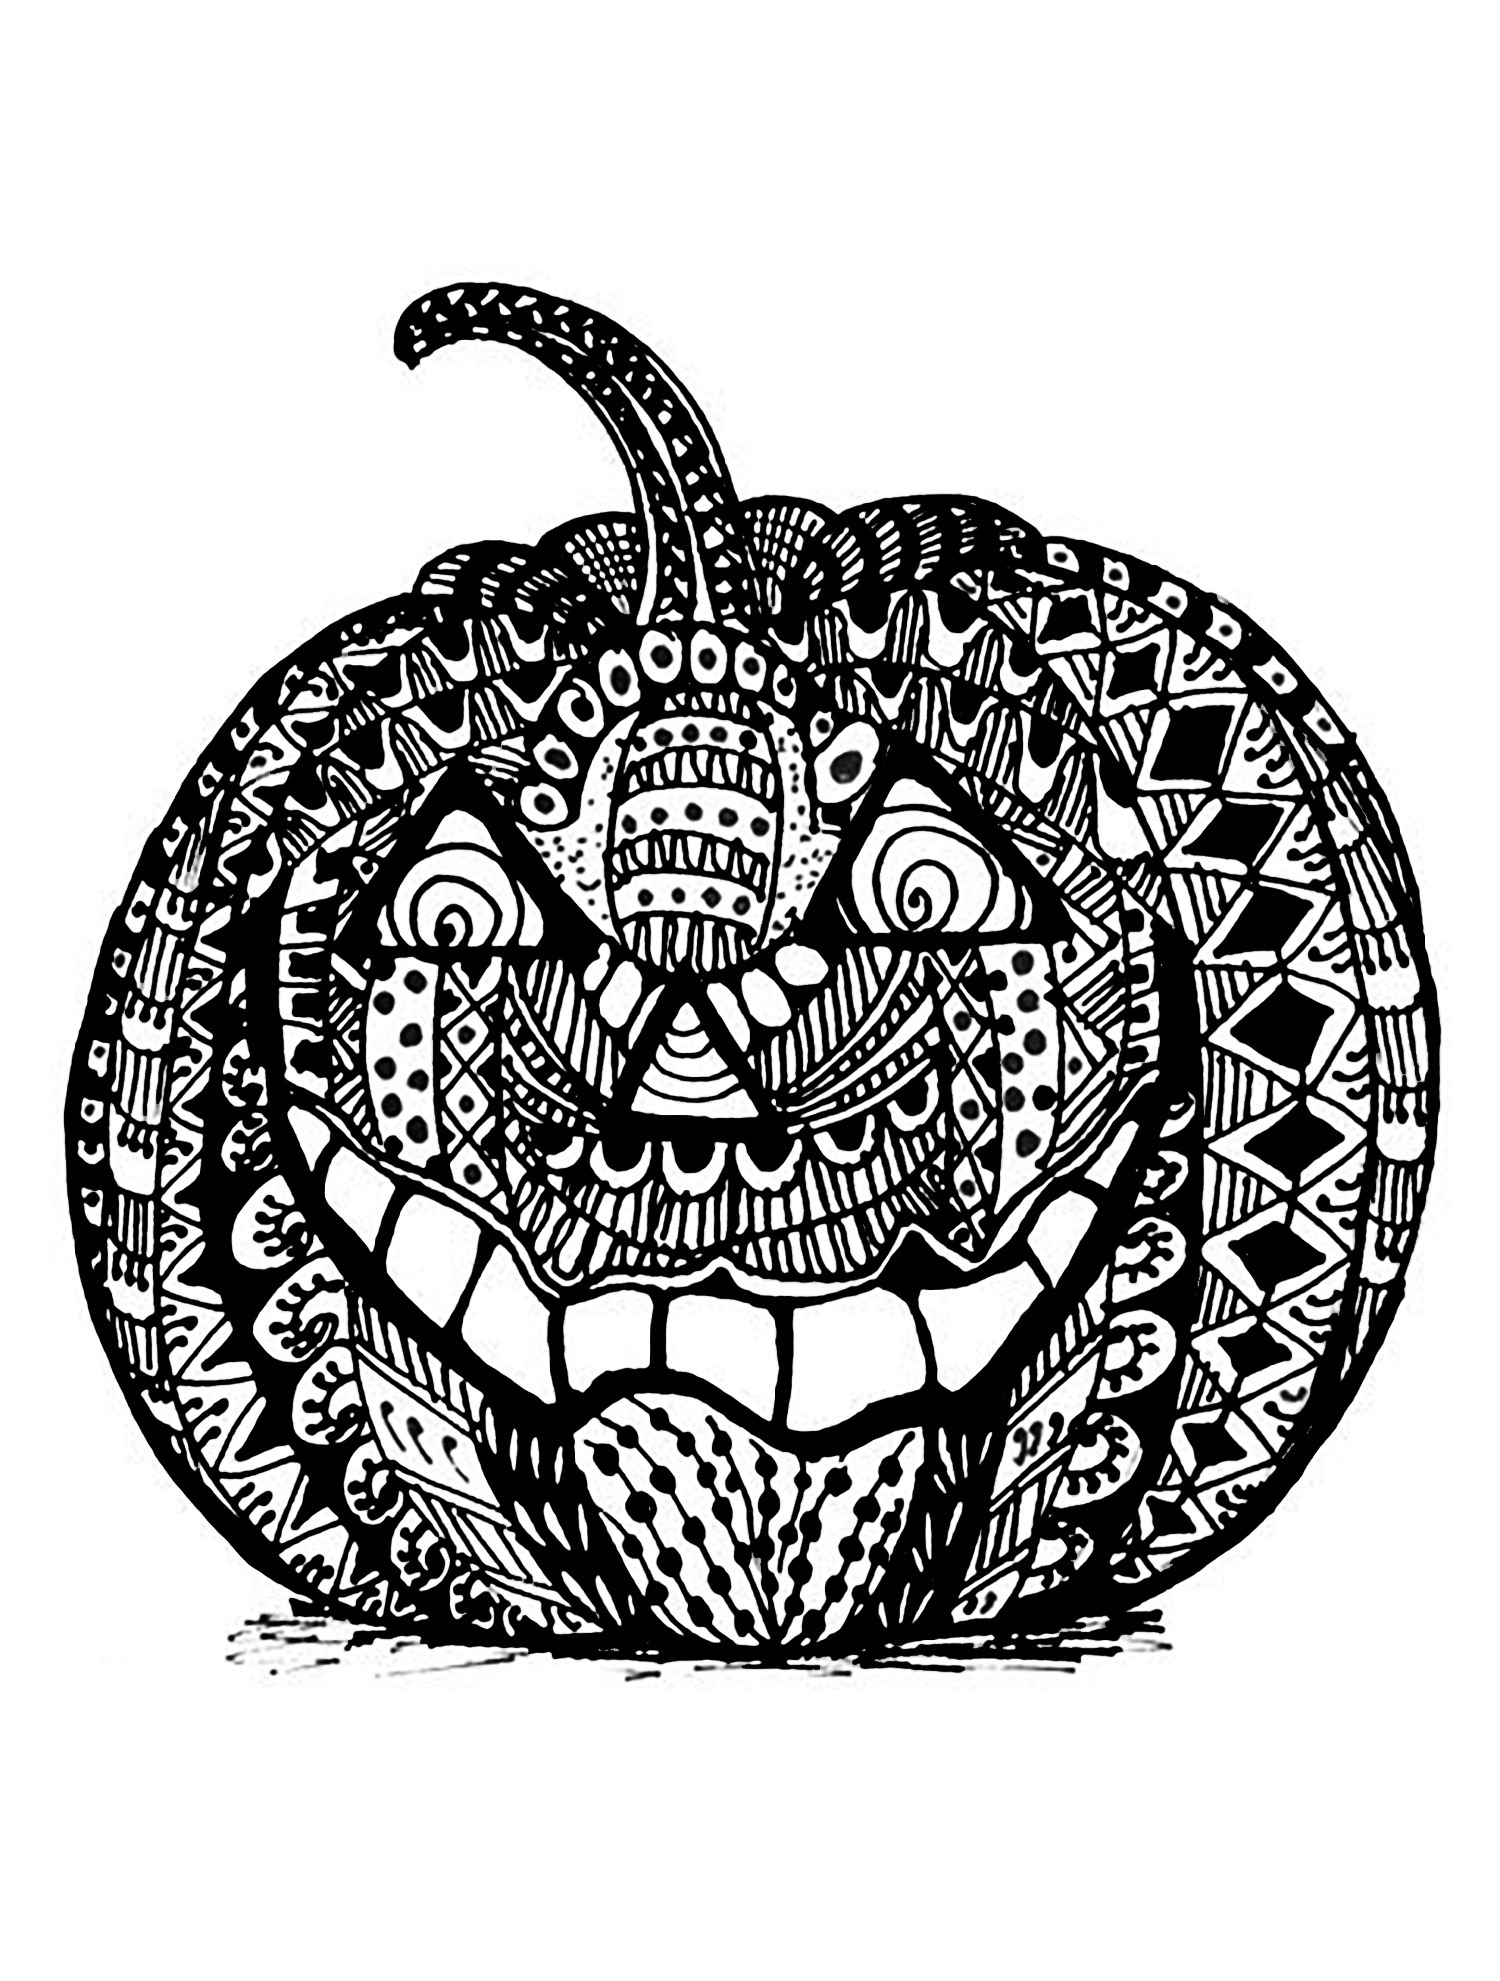 Download Halloween zentangle pumpkin - Halloween Adult Coloring Pages